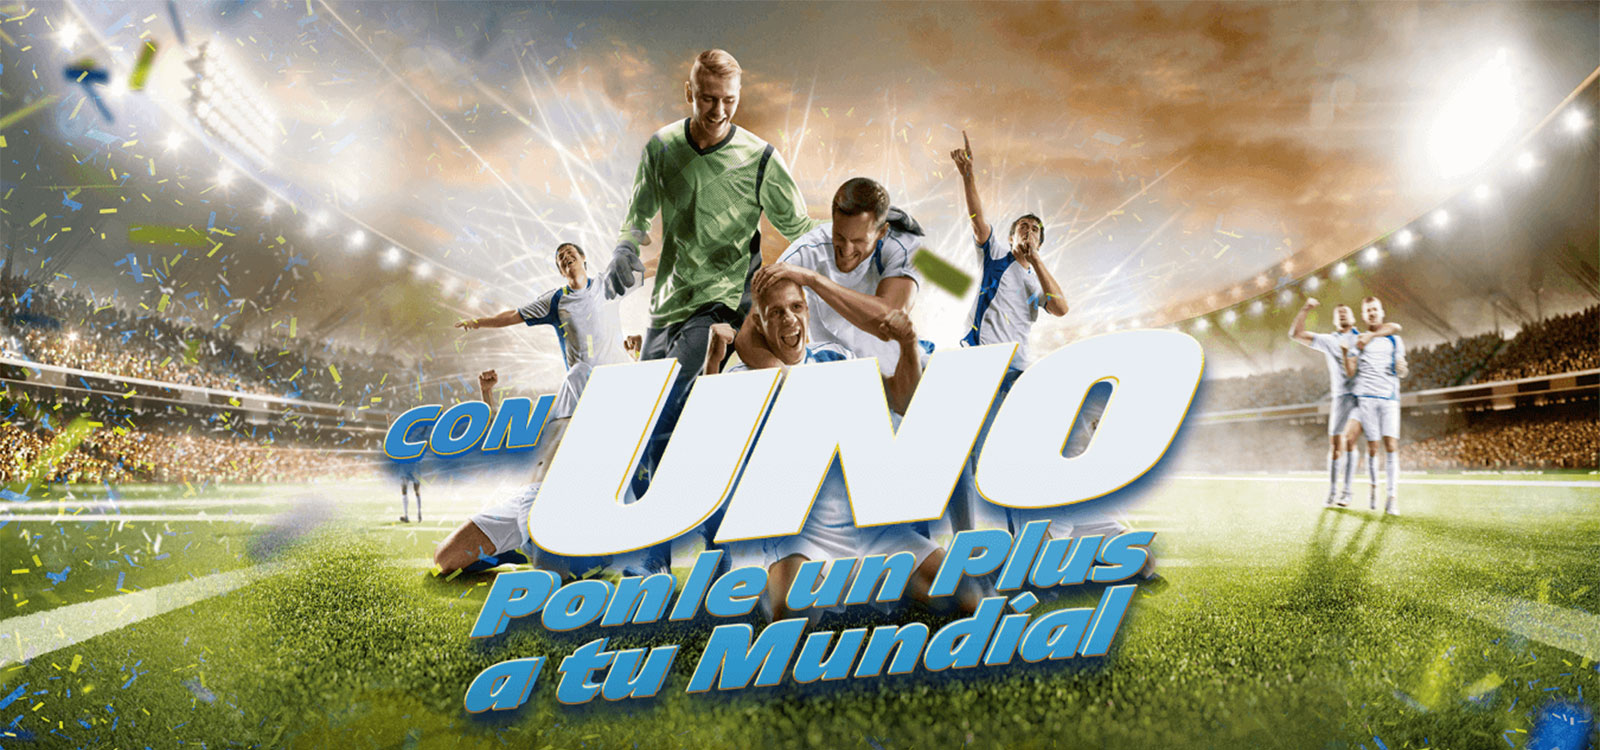 Estaciones de servicio Uno Lanza su promoción “Con UNO Ponle un Plus a tu Mundial”